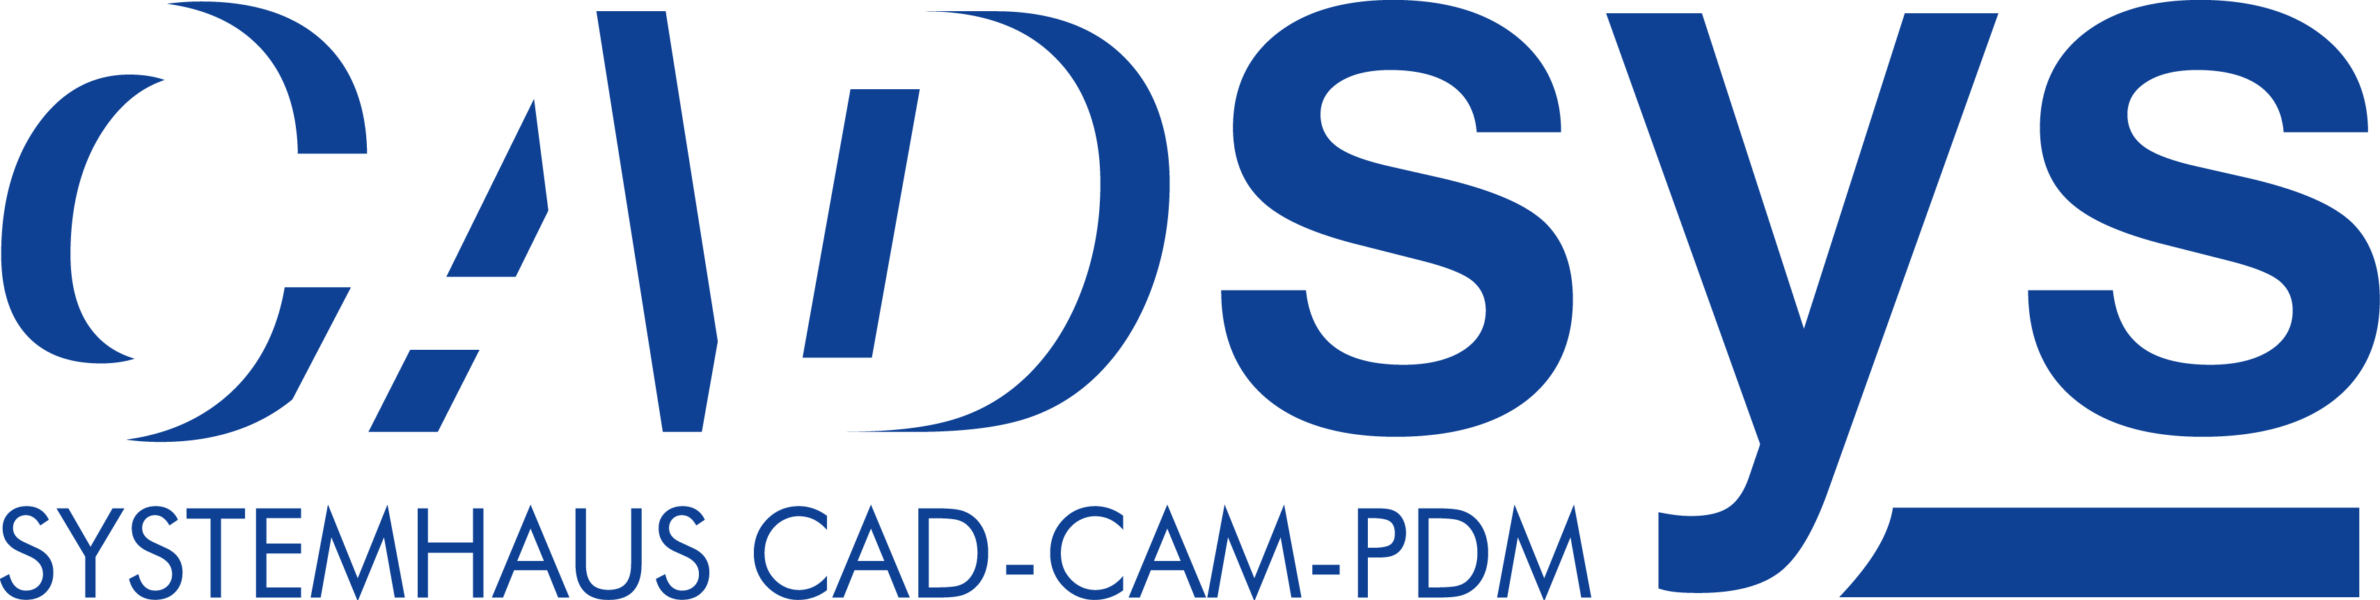 CADsys-Logo-0x600-c-default